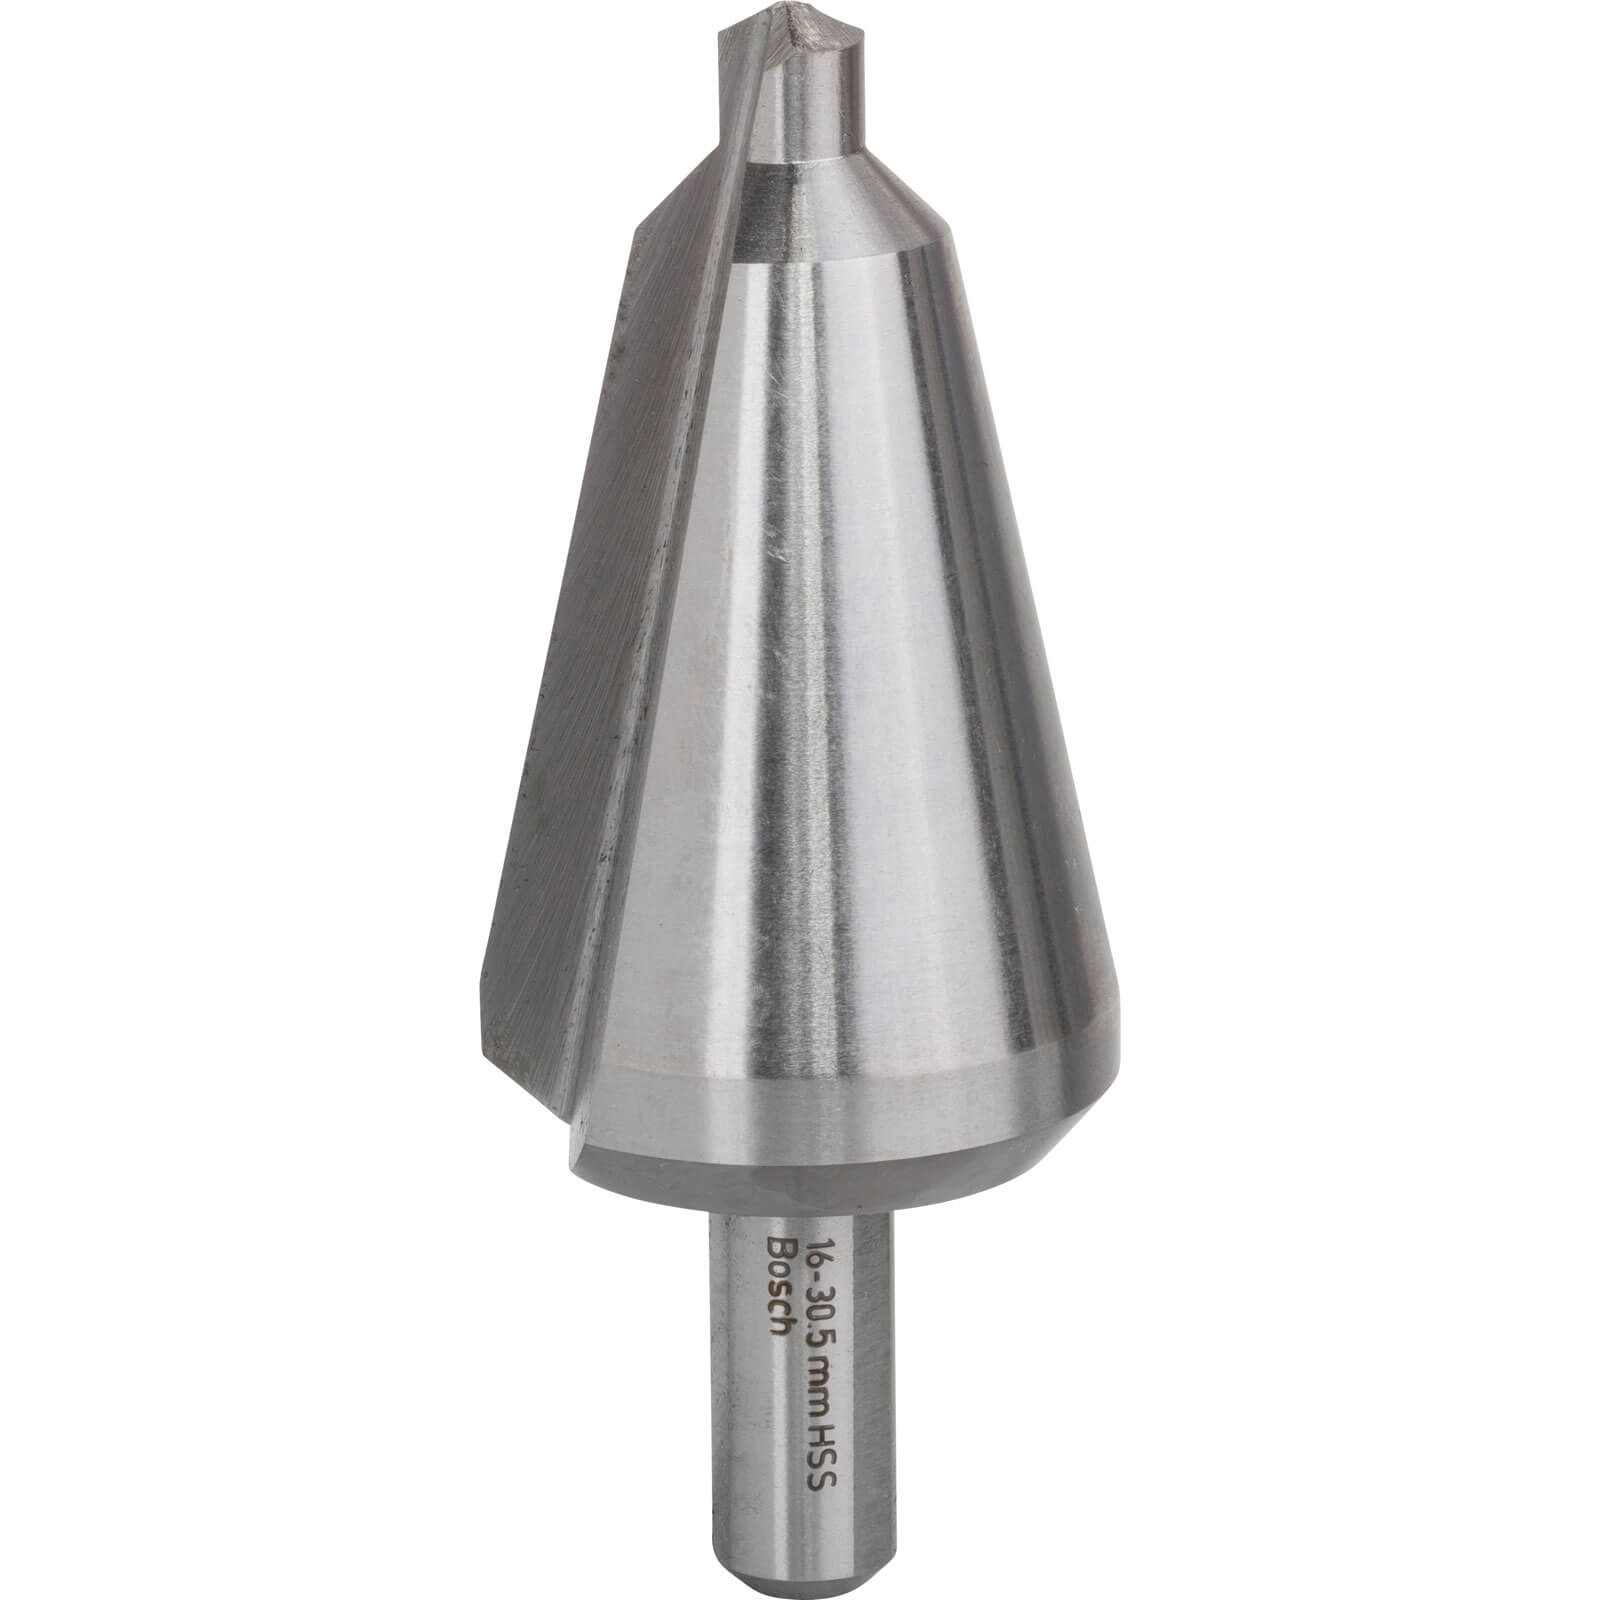 Photo of Bosch Hss Sheet Metal Cone Cutter Drill Bit 6mm - 30.5mm